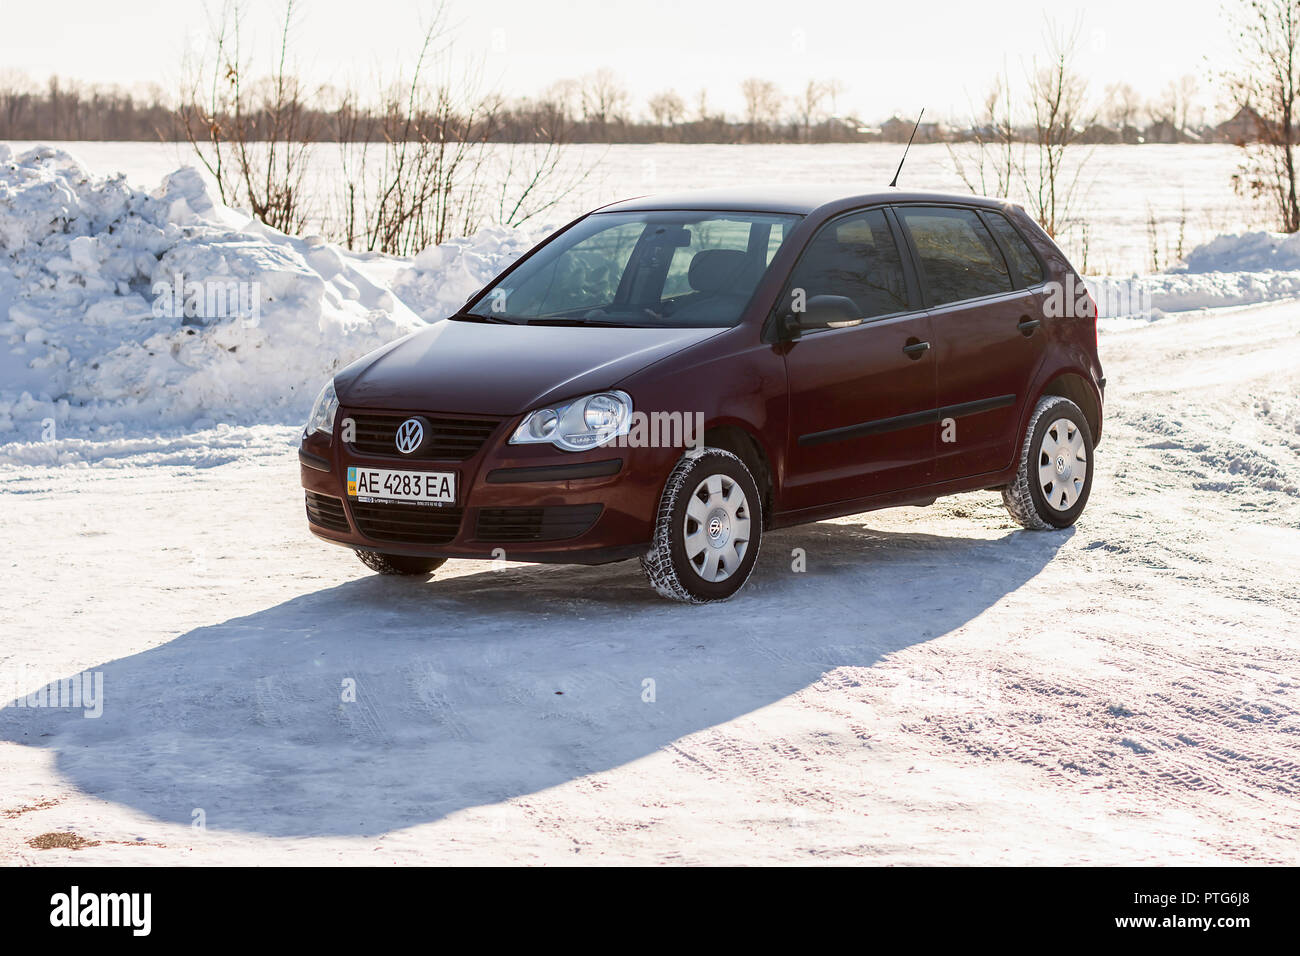 Regione di DNIPROPETROVSK, Ucraina - Febbraio 03, 2014: Volkswagen Polo colore borgogna sulla strada invernale, non urbana Foto Stock